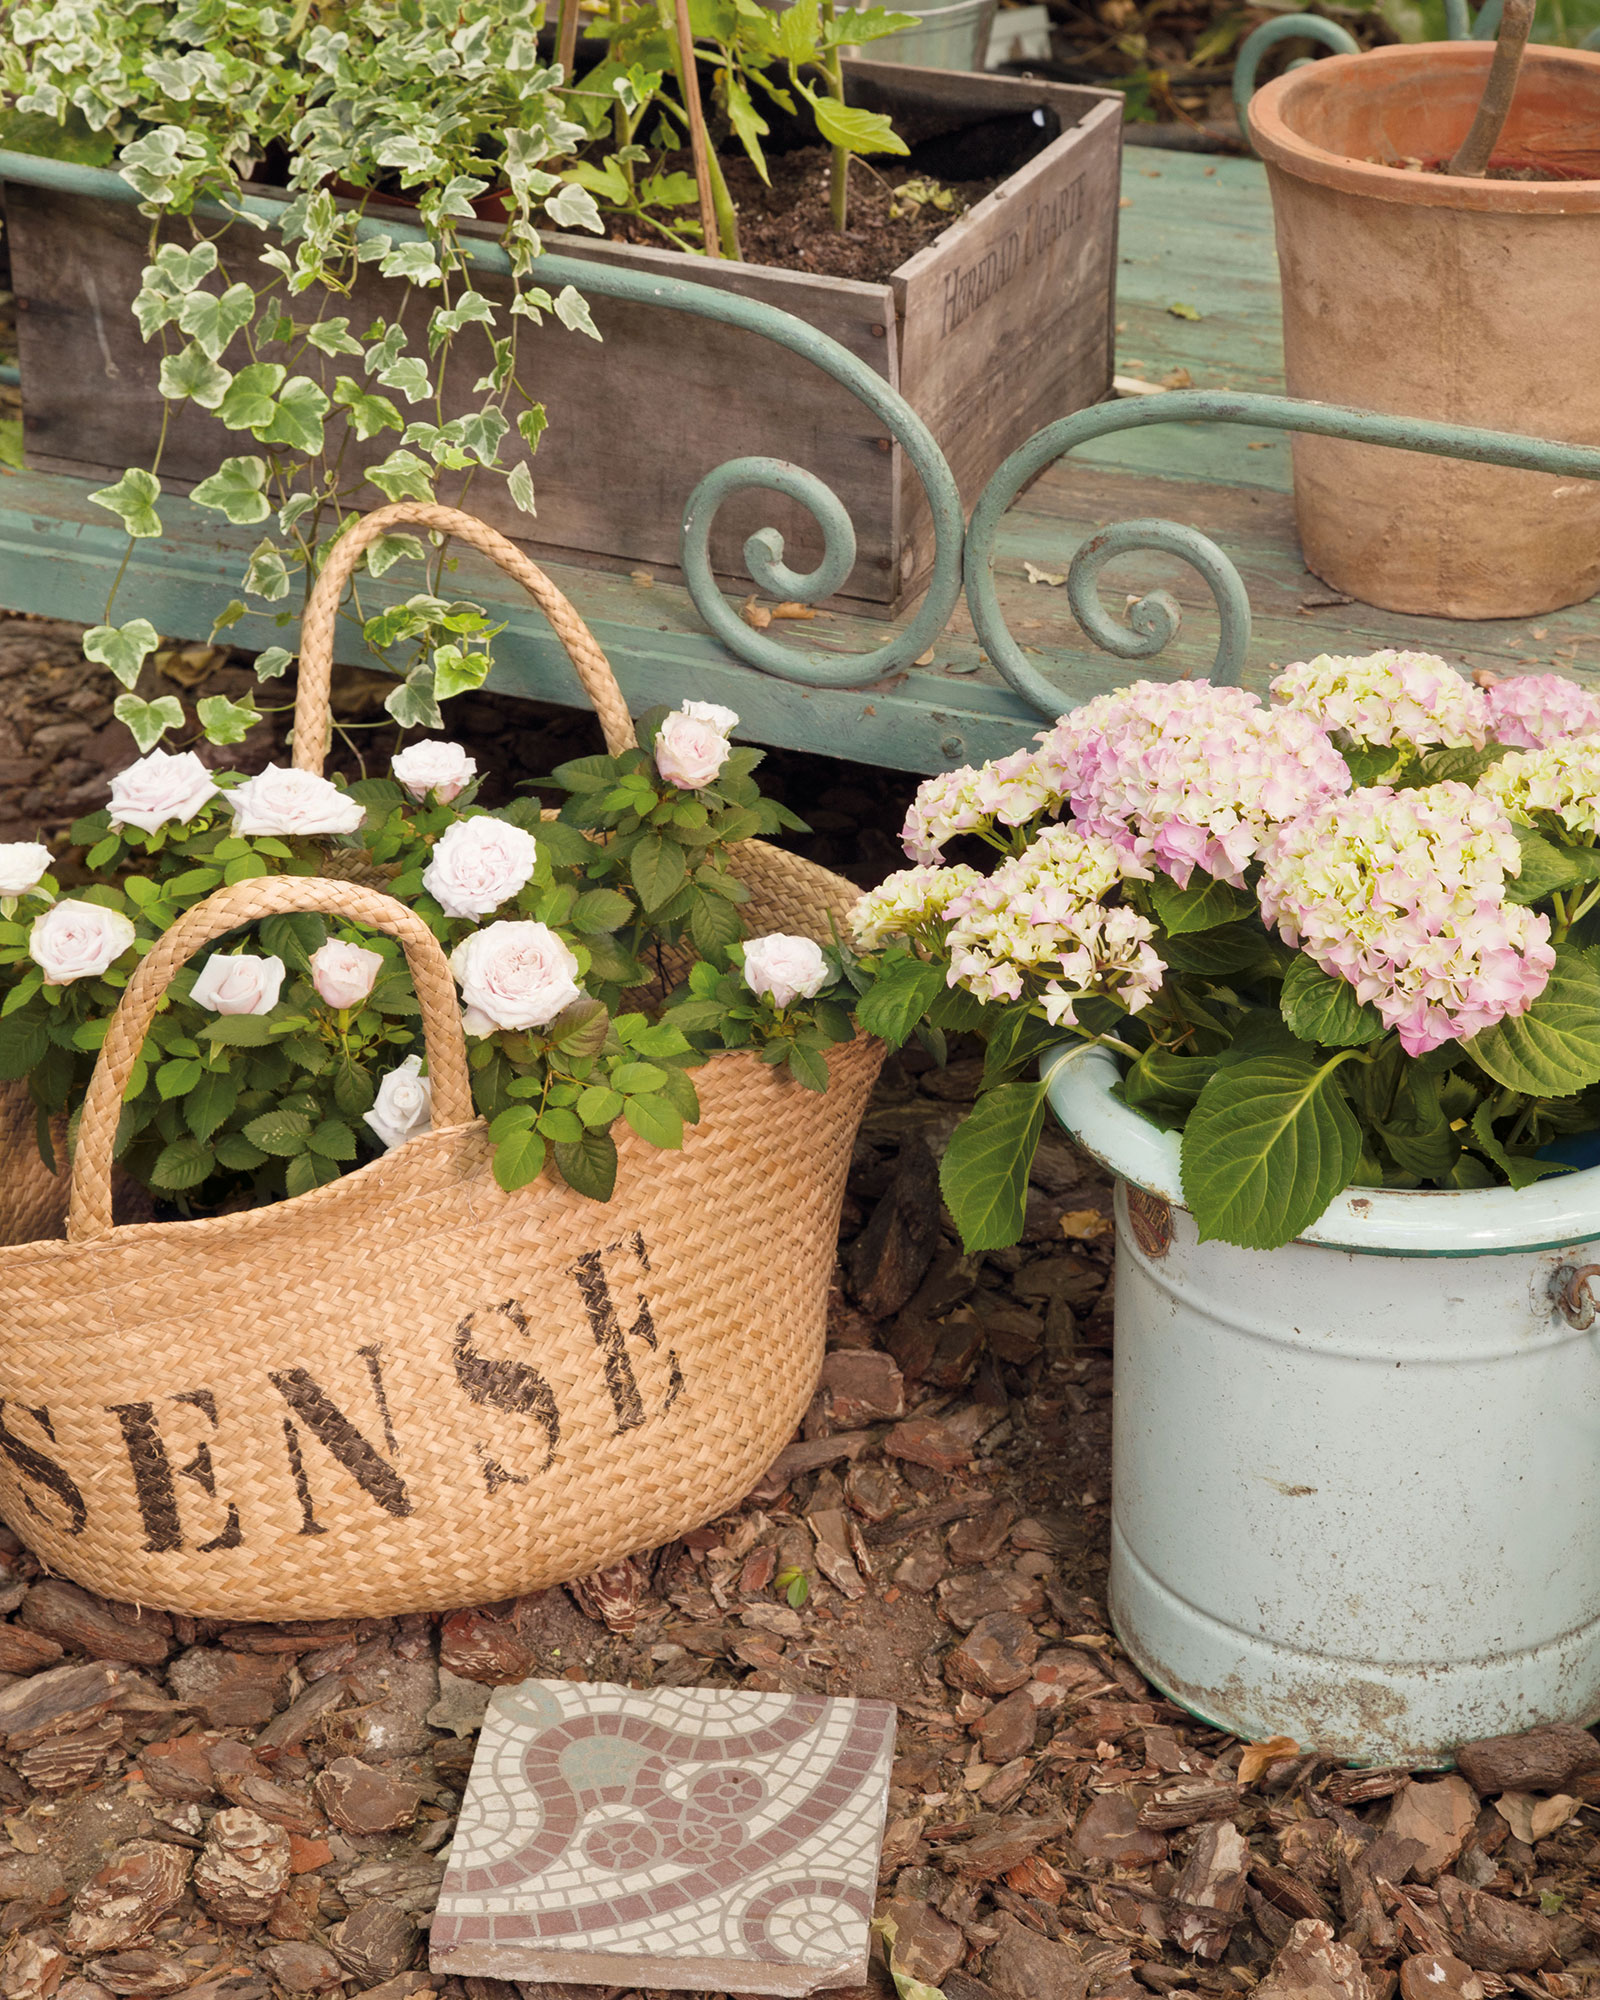 Detalle decorativo de cesta con flores.